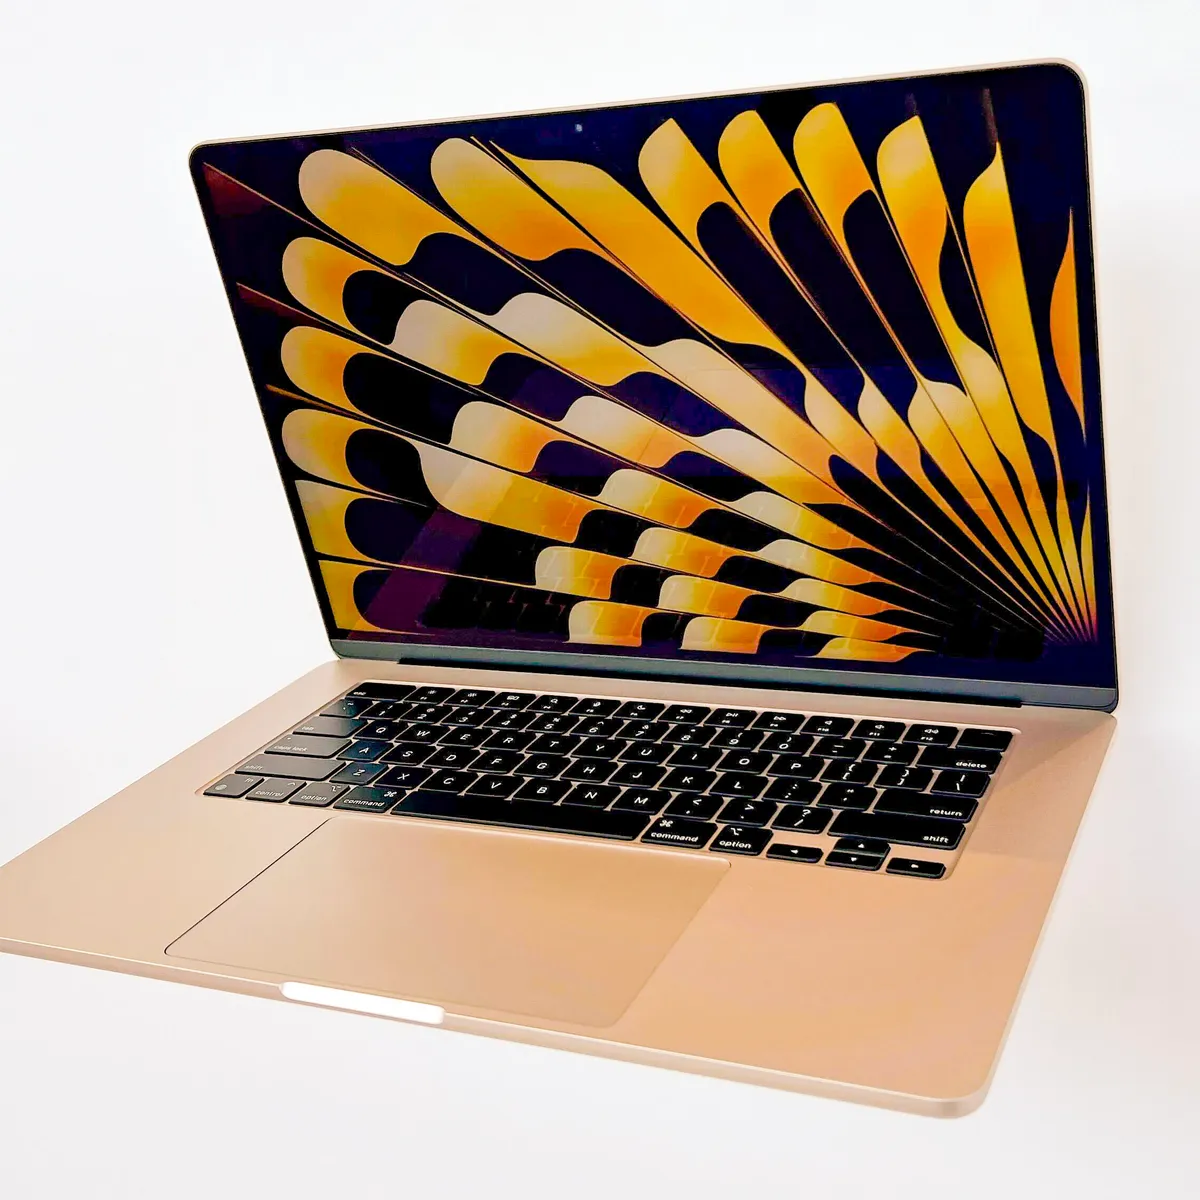 Обзор MacBook Air 15 что нового?